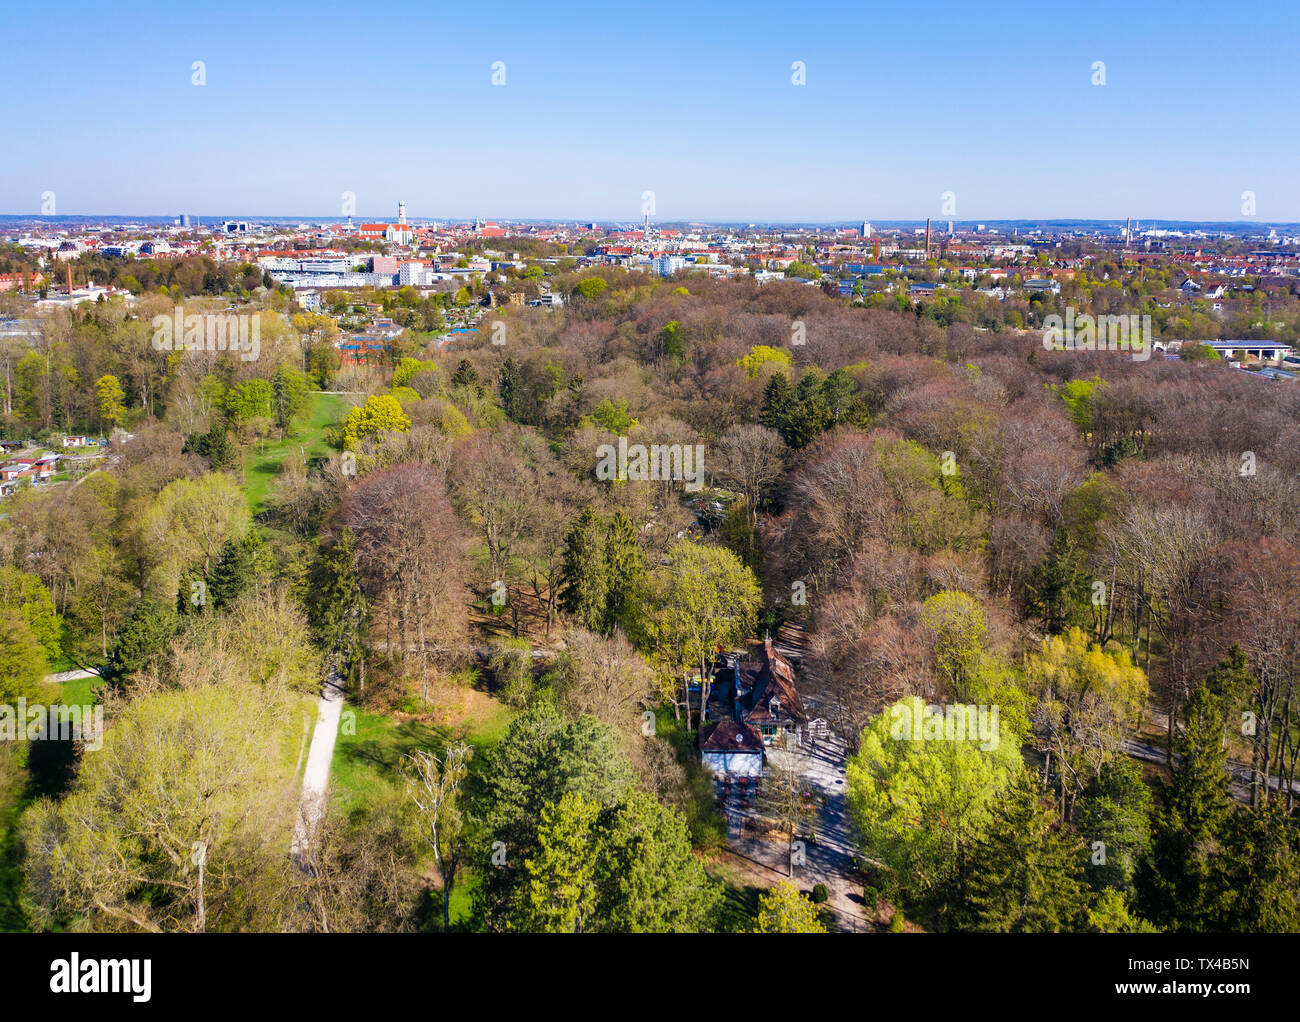 Alemania, Augsburg, vistas Siebentischwald y ciudad, vista aérea Foto de stock